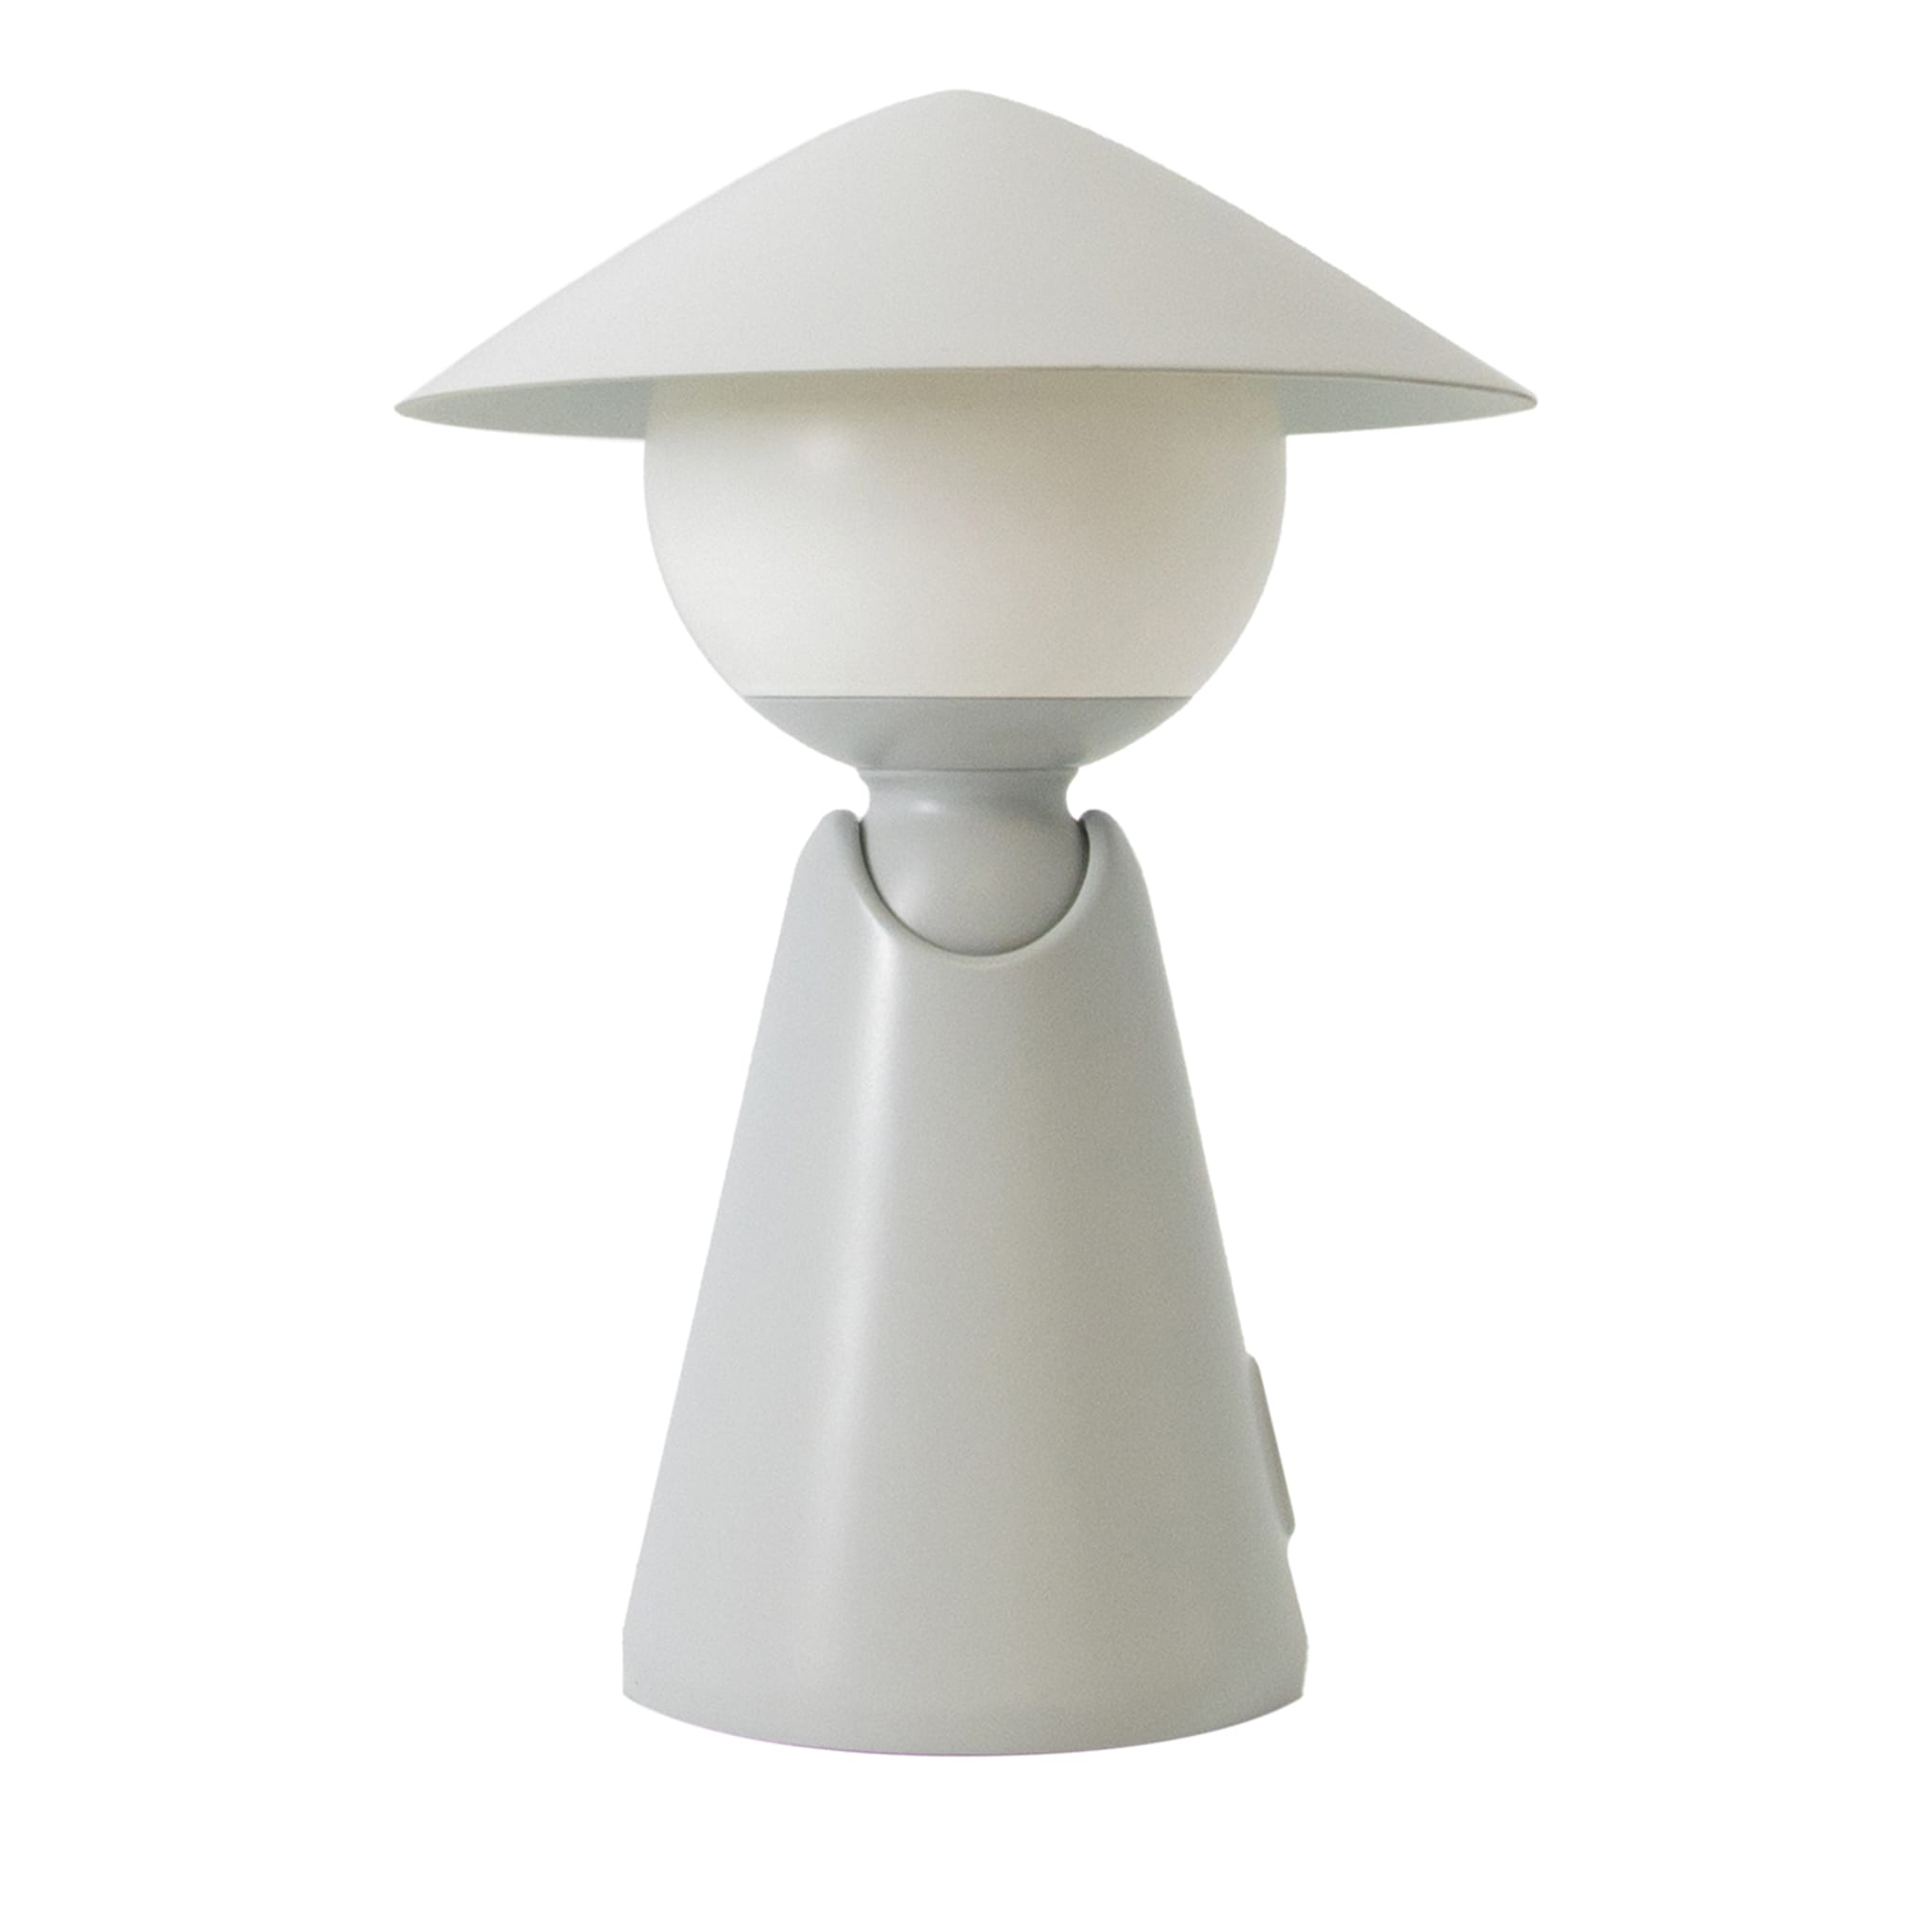 Puddy graue tischlampe von Albore Design - Hauptansicht